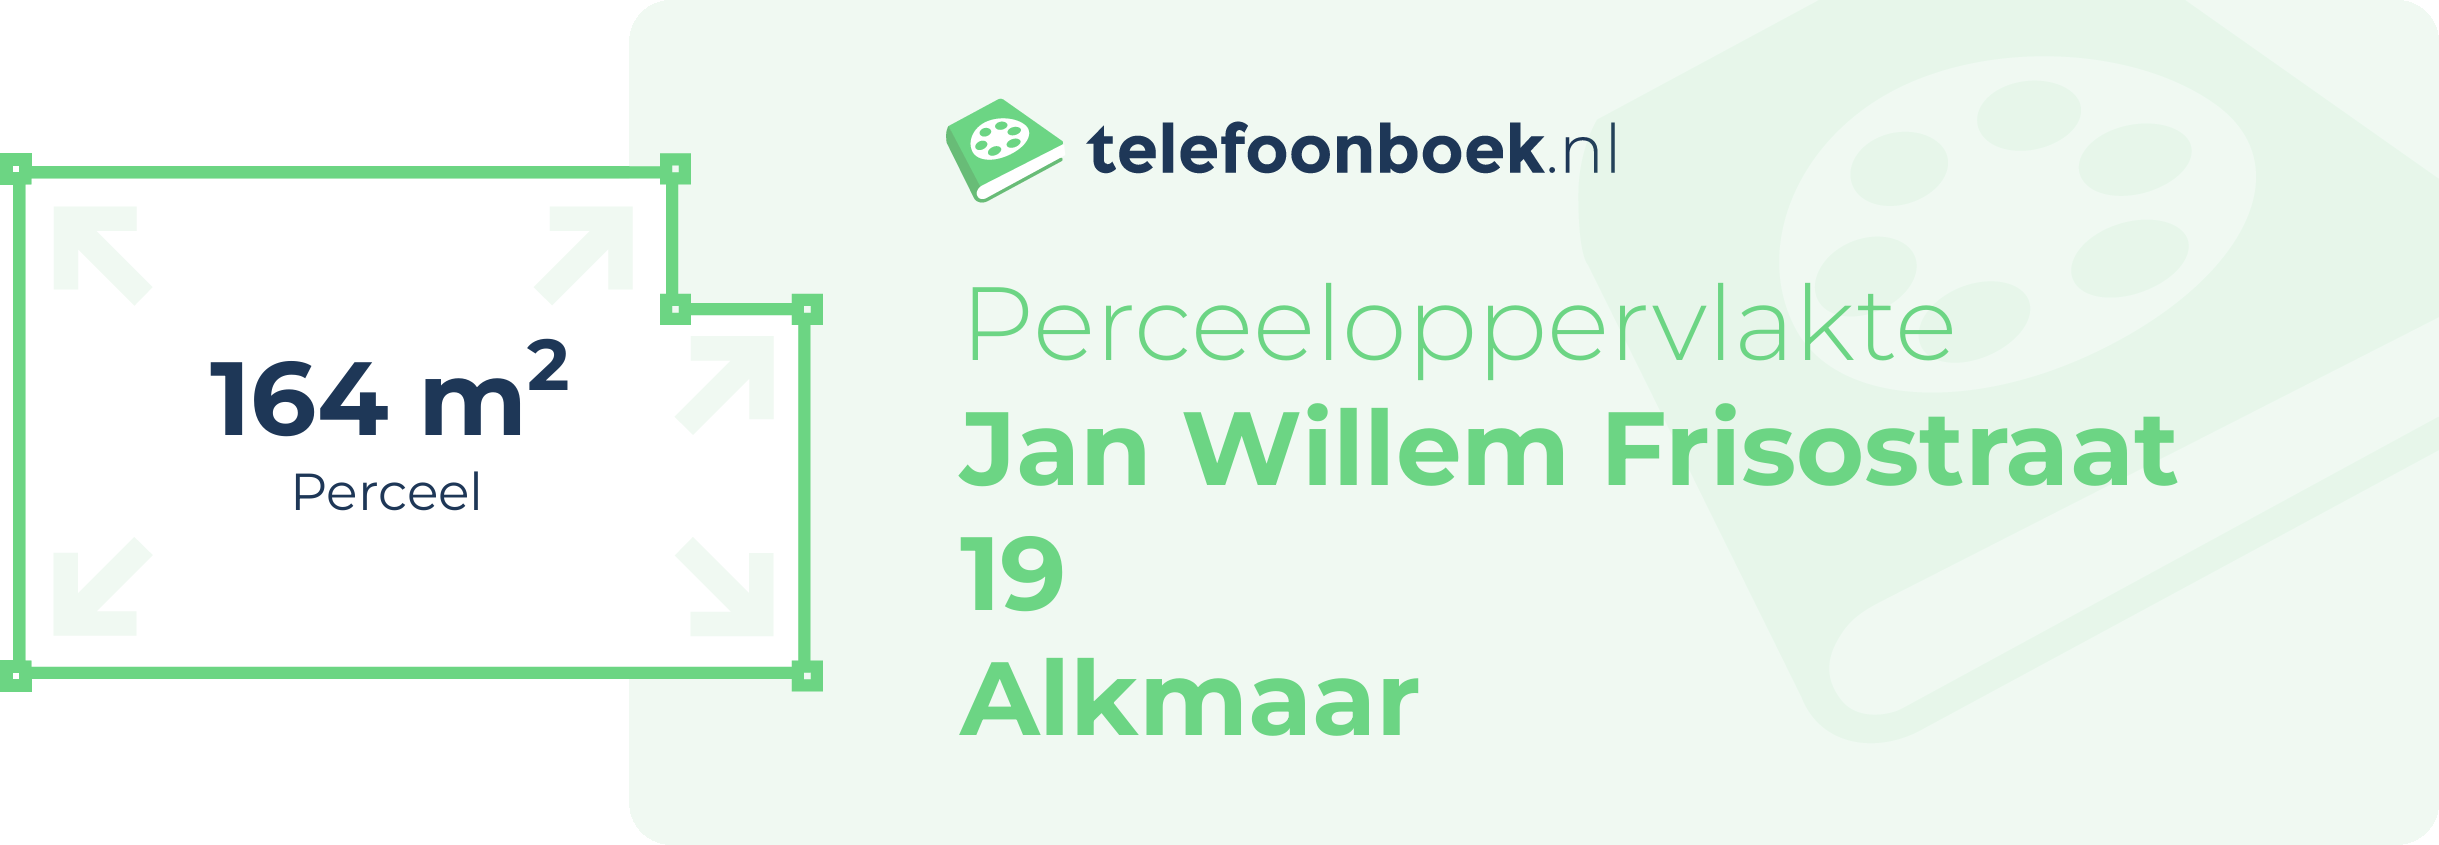 Perceeloppervlakte Jan Willem Frisostraat 19 Alkmaar